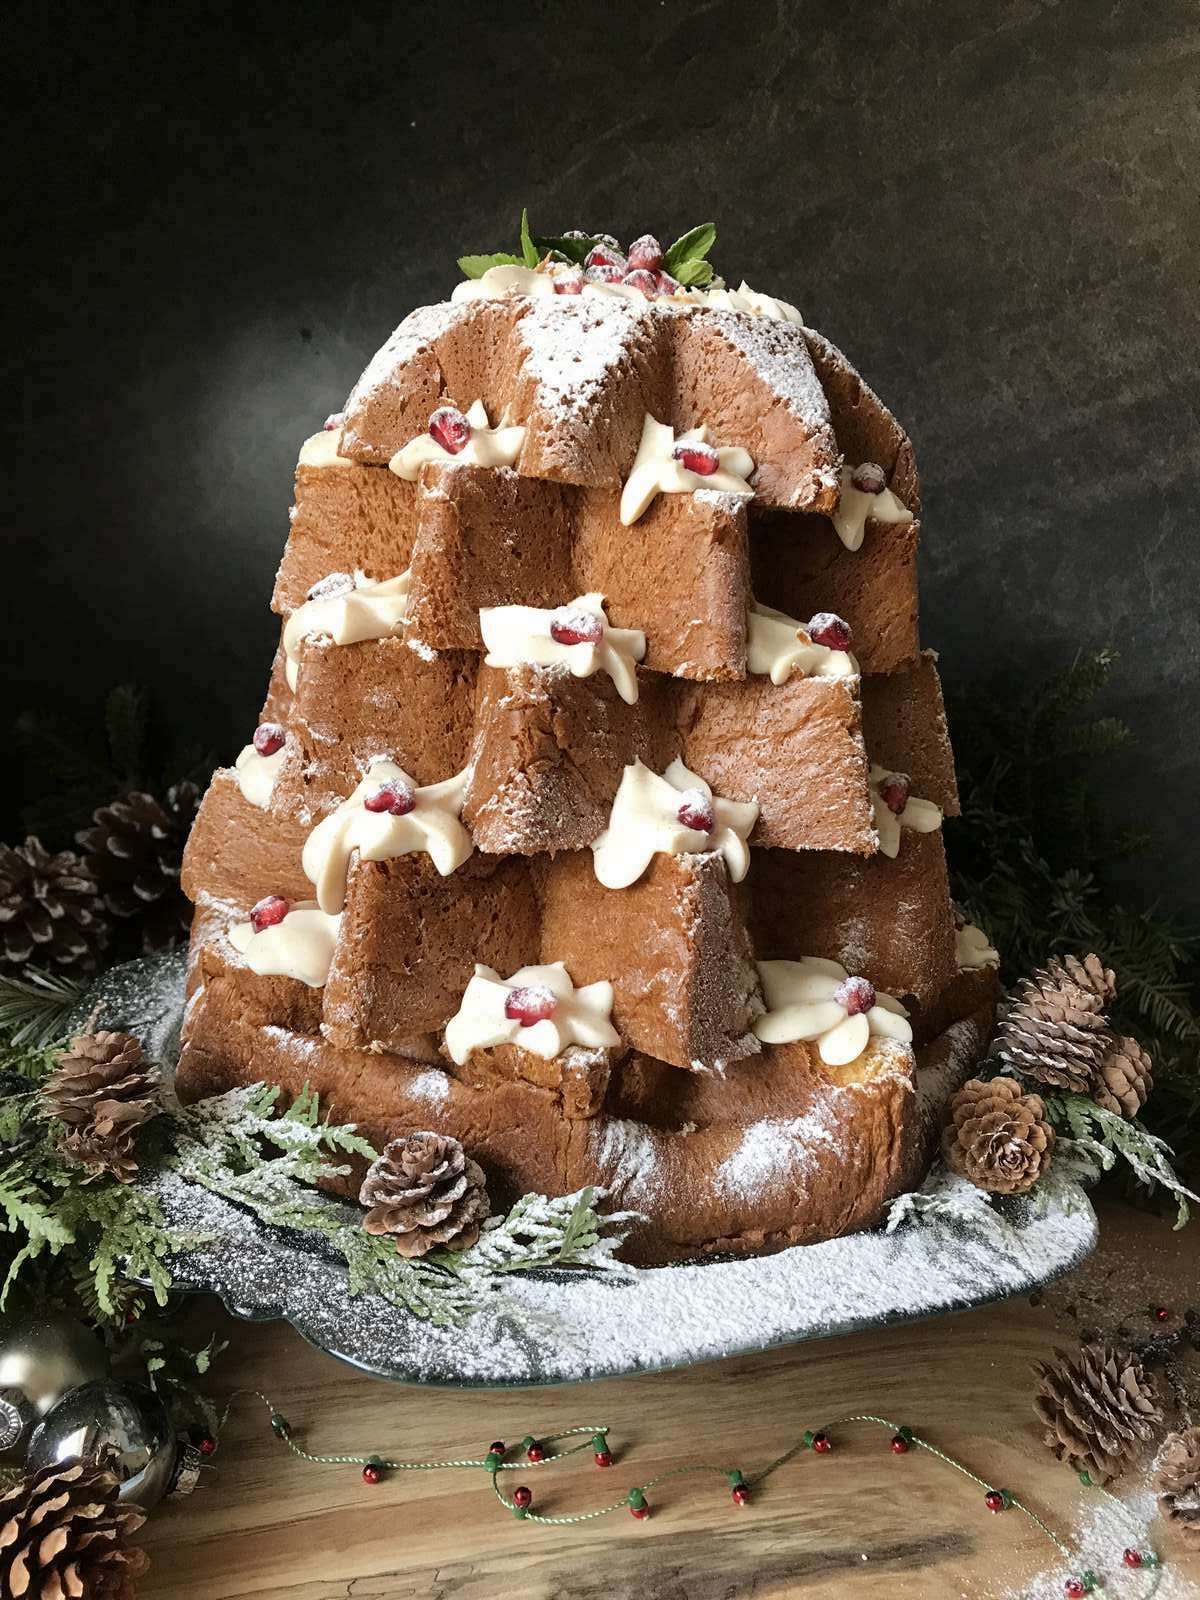 https://www.shelovesbiscotti.com/wp-content/uploads/2021/07/pandoro-Christmas-Tree-Cake-3-rotated.jpg